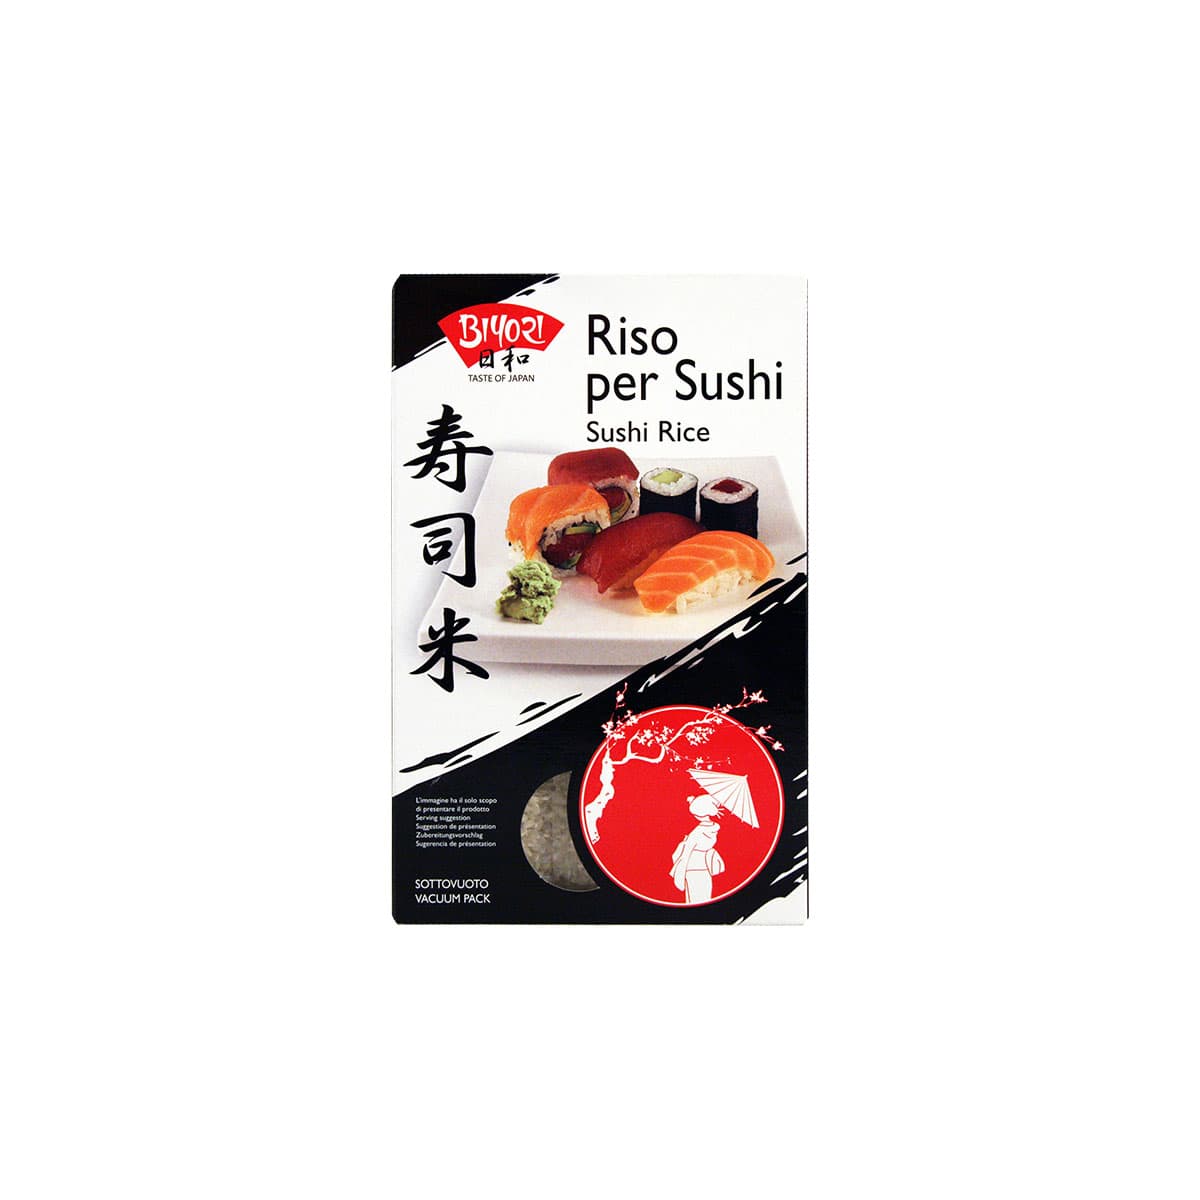 Riso per sushi, 1kg – Kathay